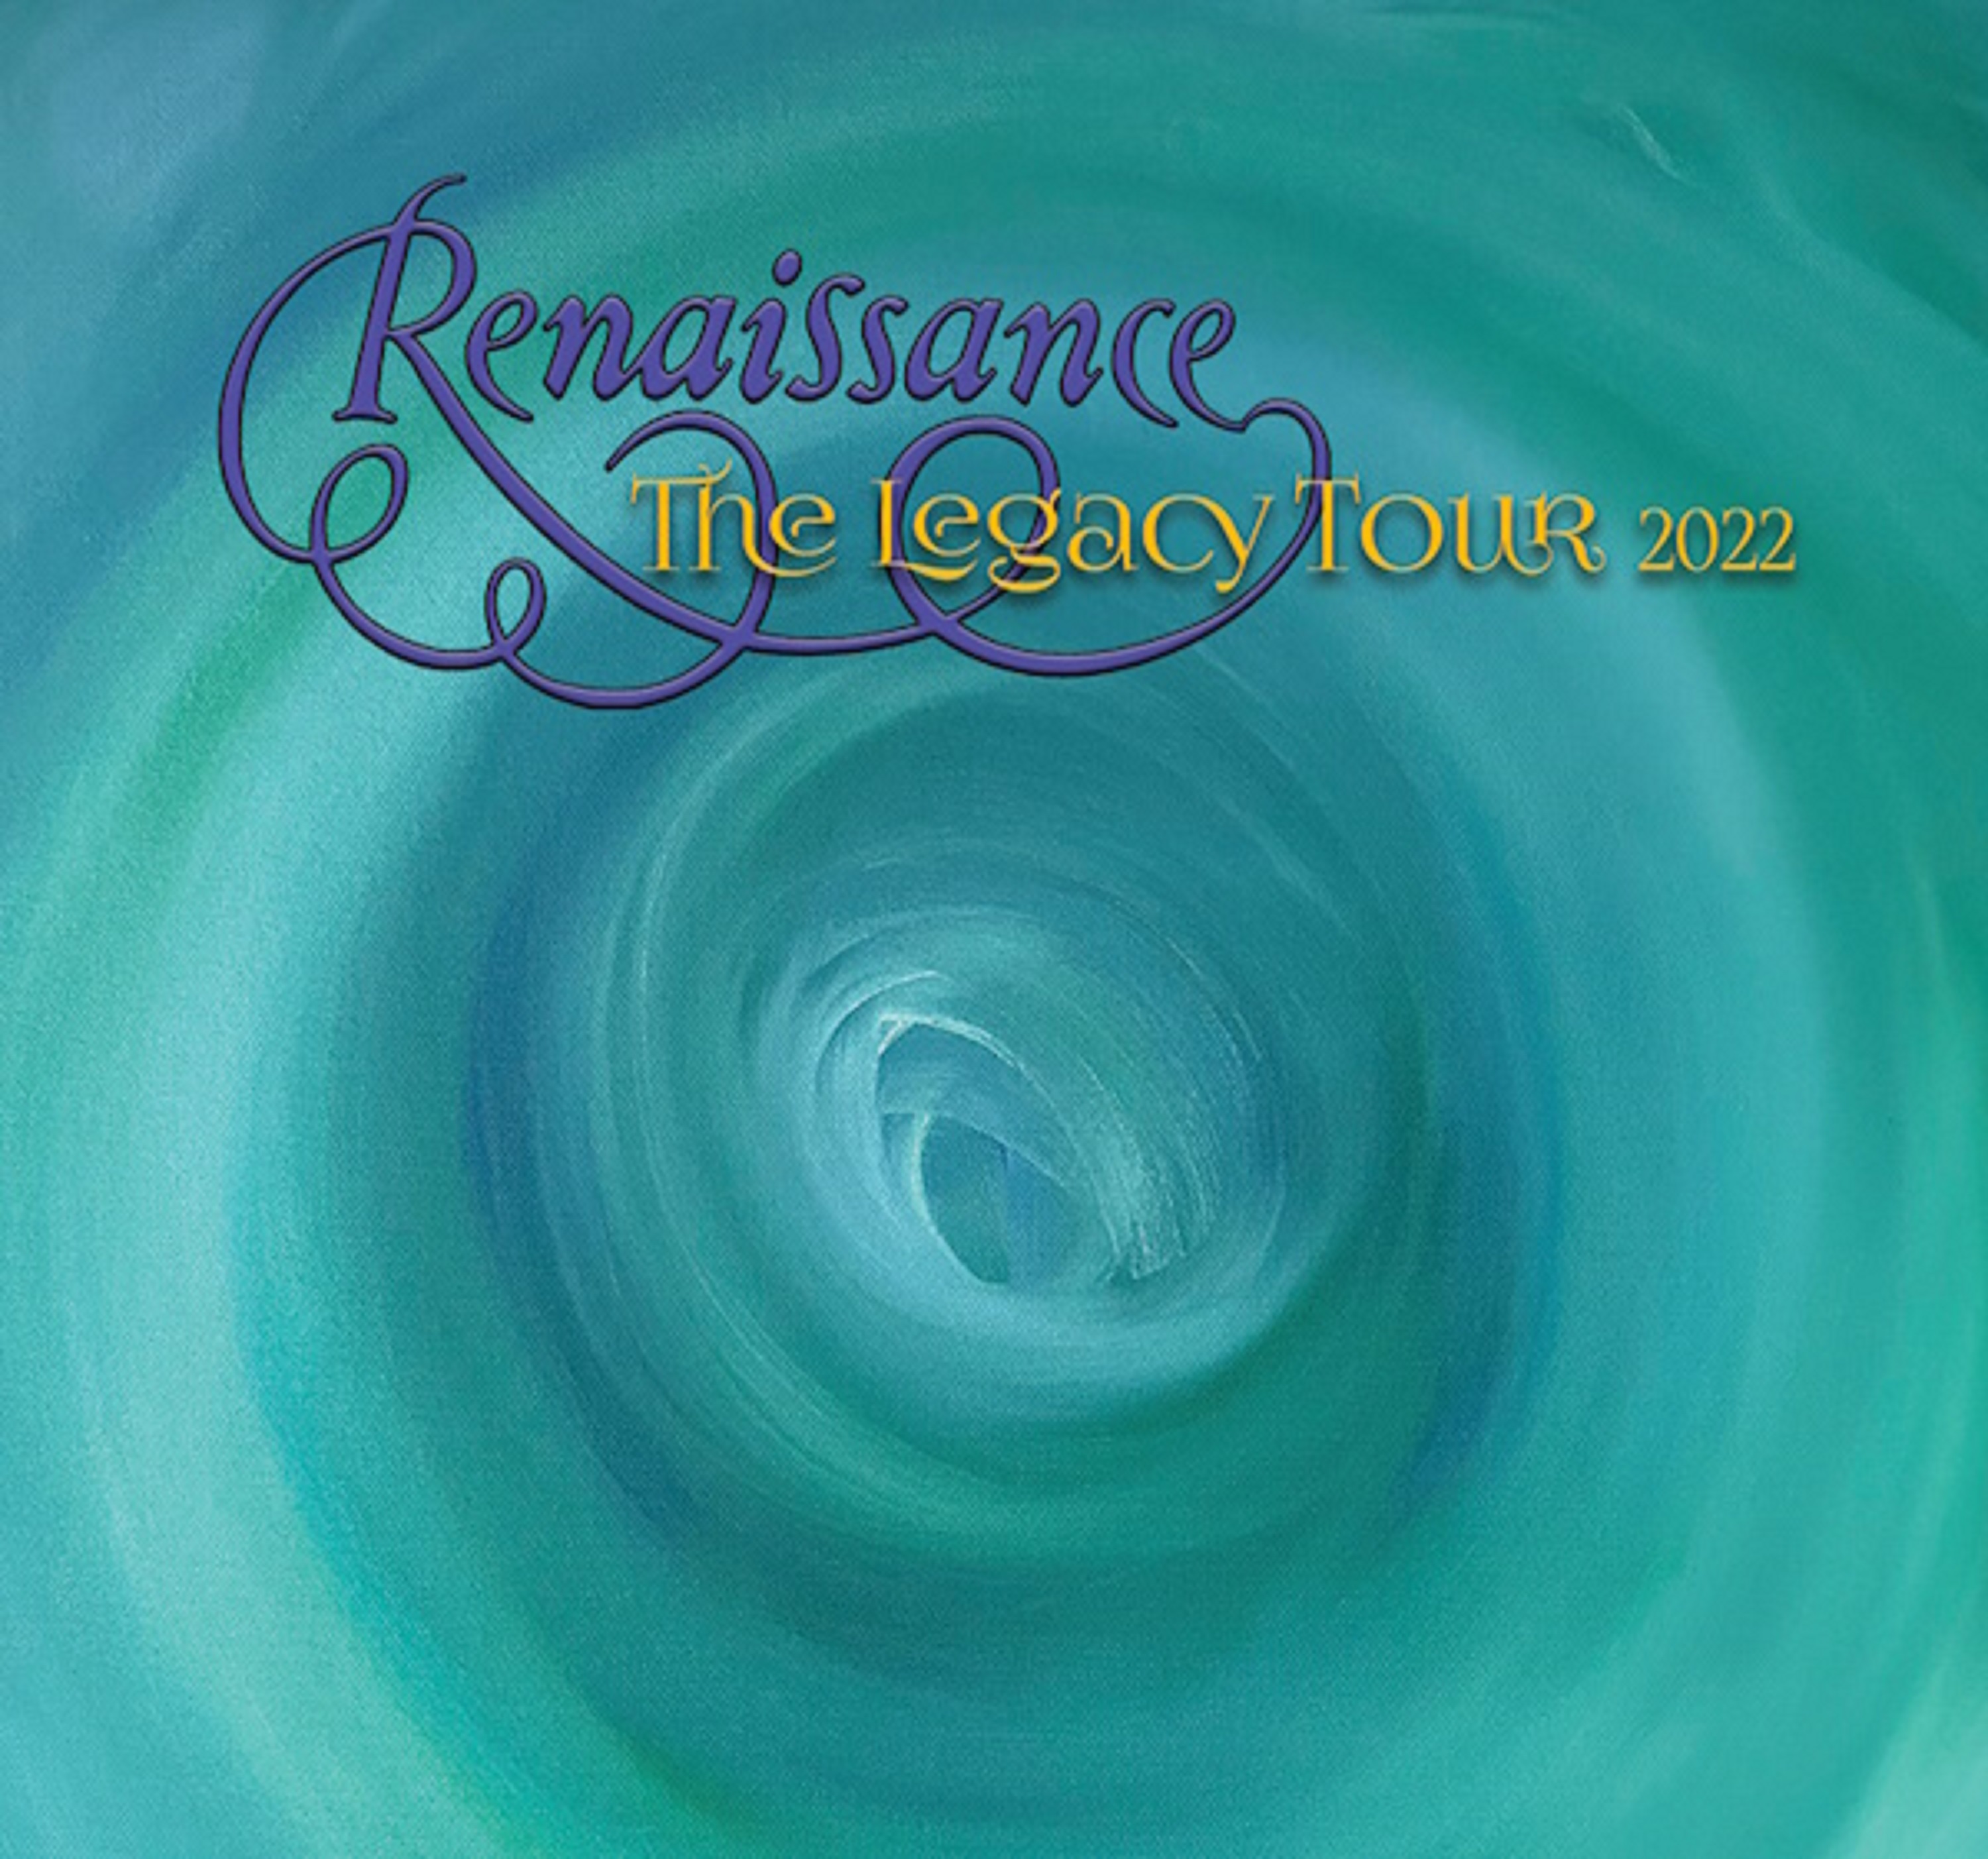 Symphonic Rock Legends Renaissance Featuring Annie Haslam “The Legacy Tour Fall 2022”